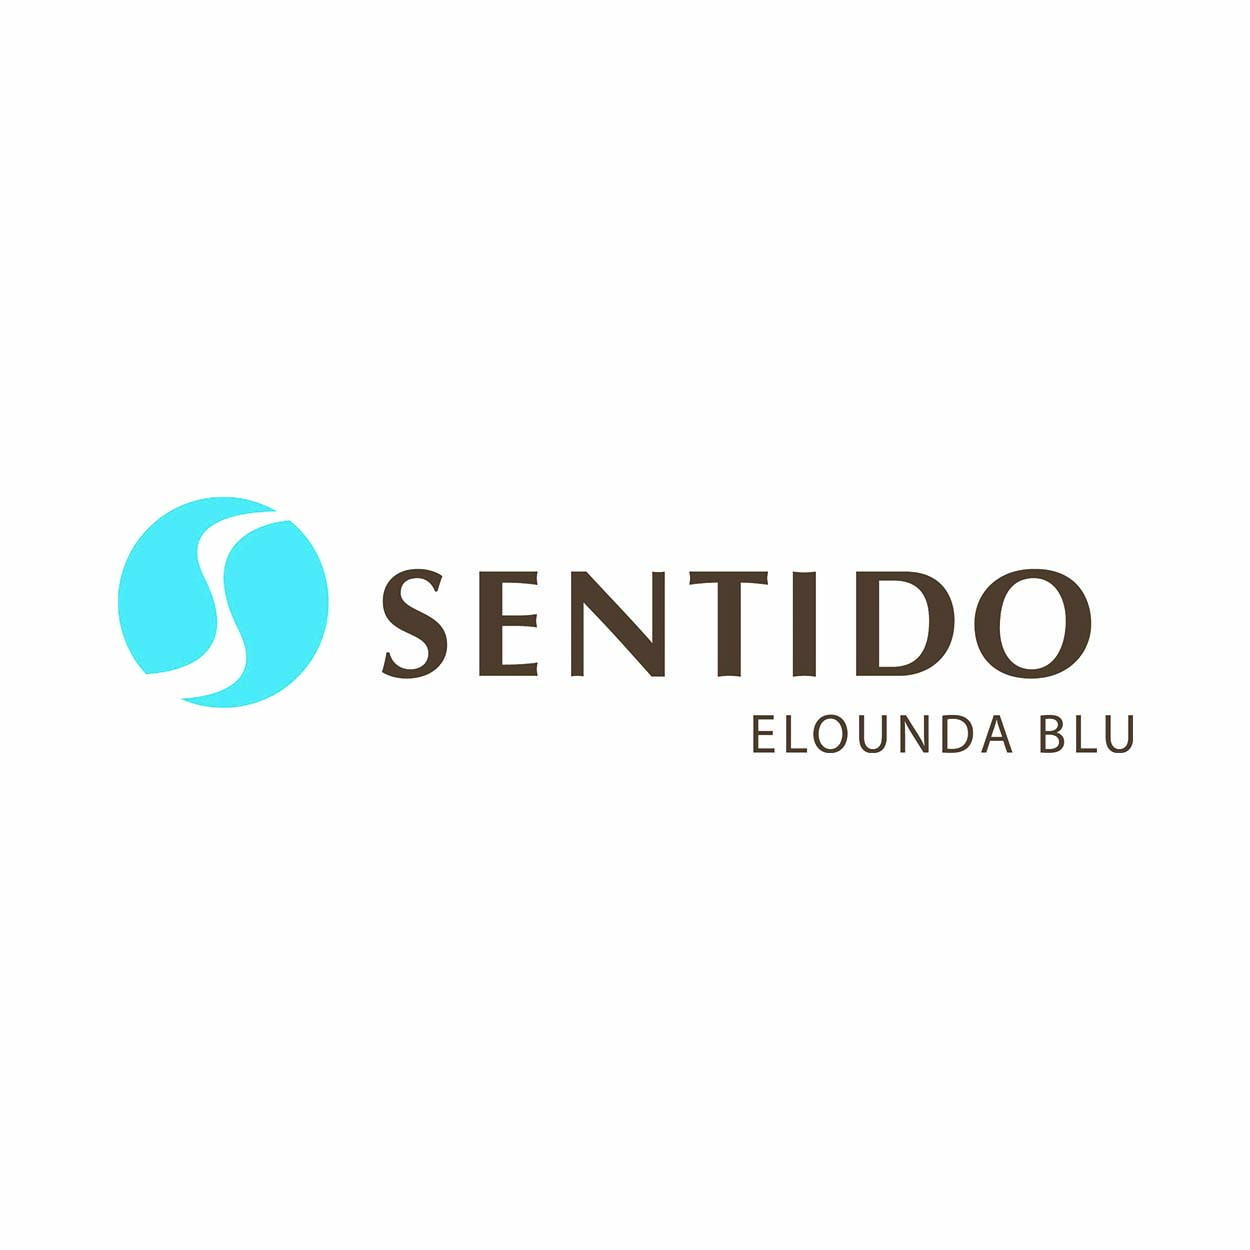 SENTIDO ELOUNDA BLUE